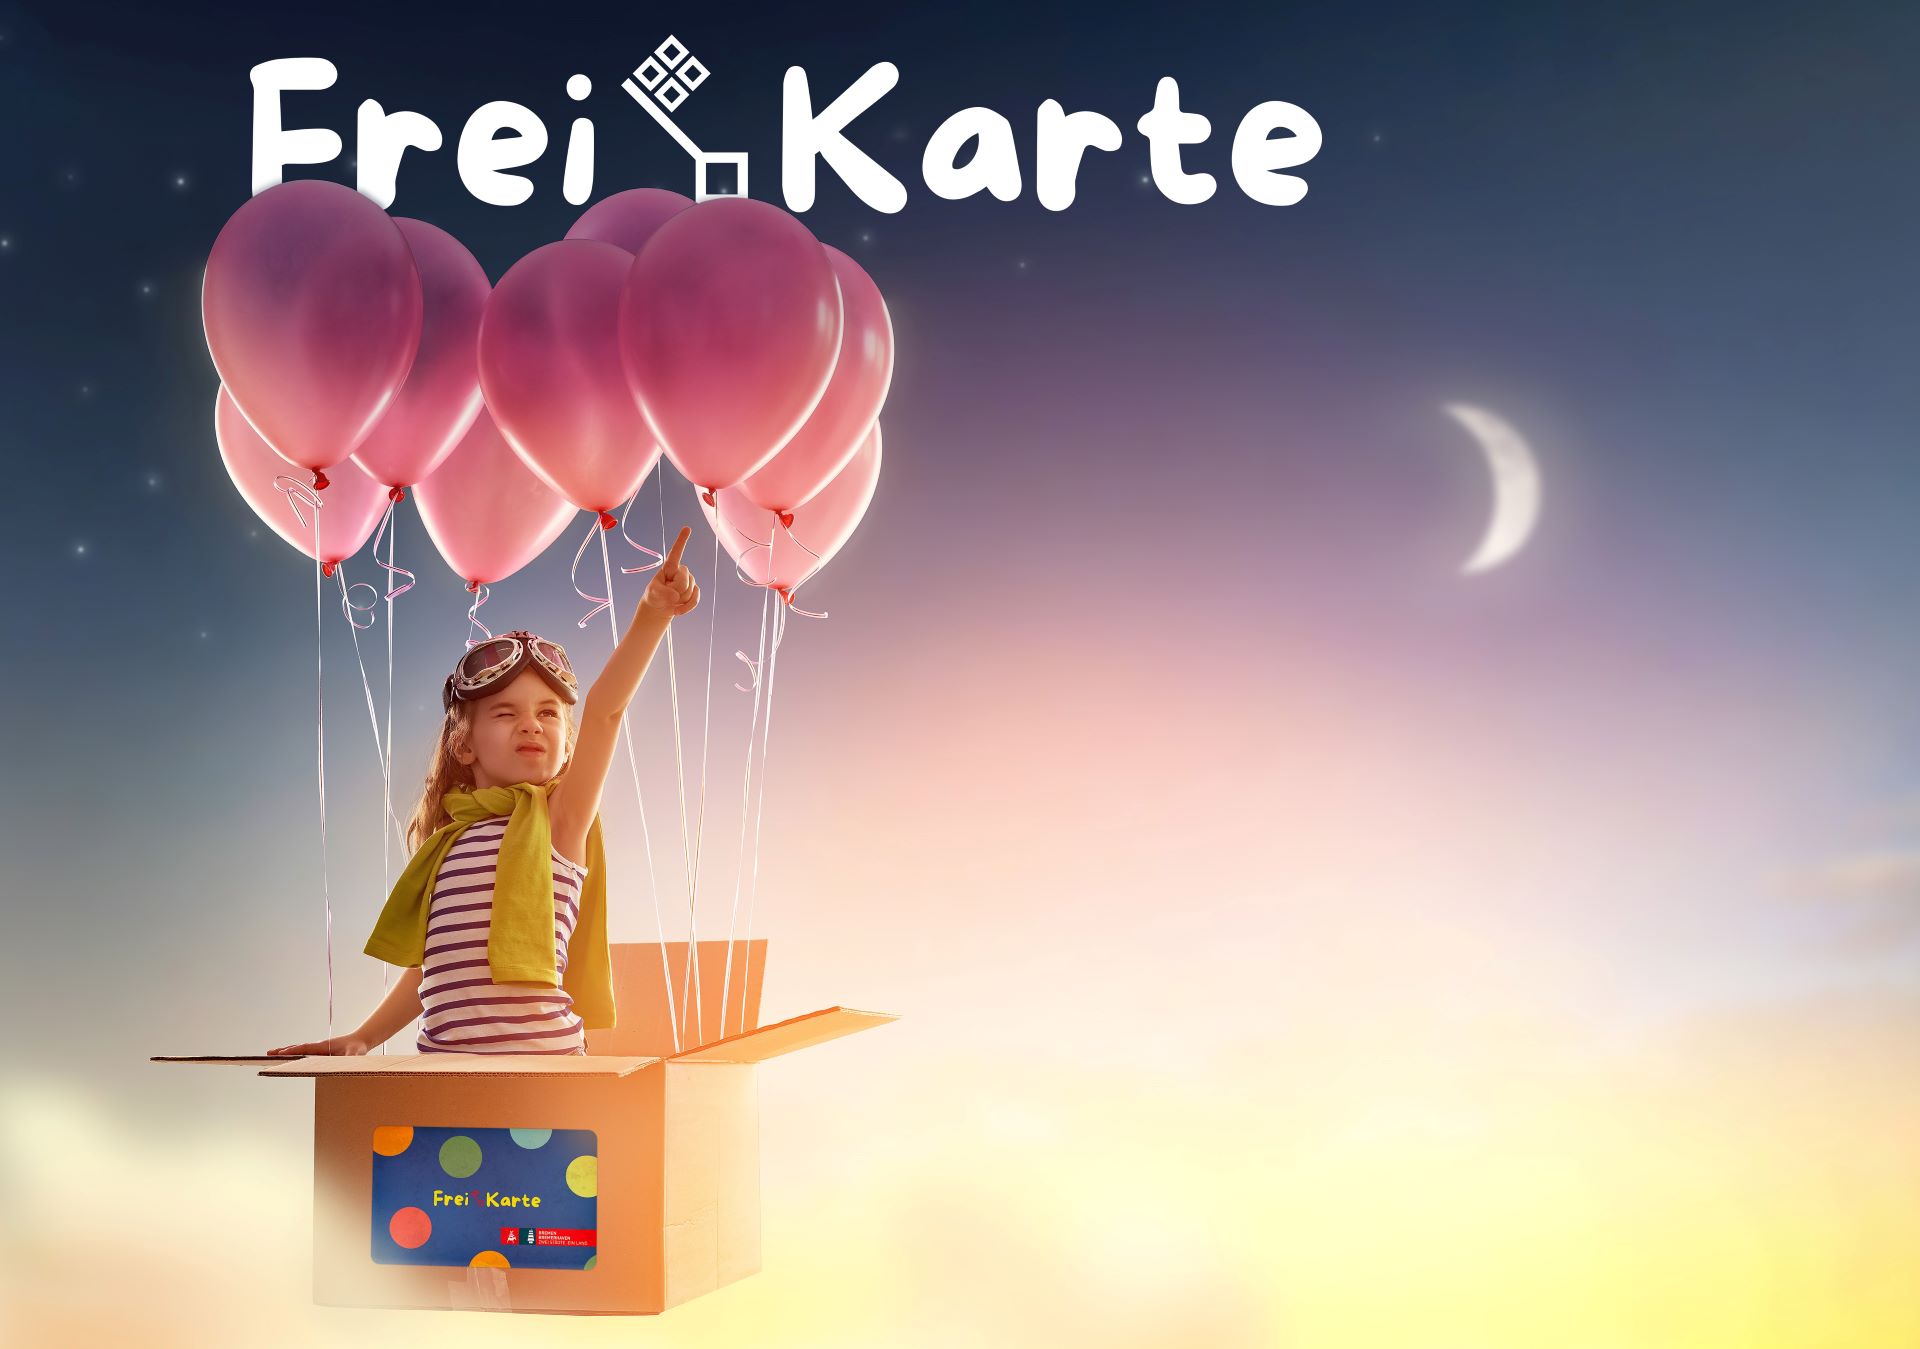 Plakat der FreiKarte Bremen mit einem Kind in einer Schachtel getragen von Luftballons